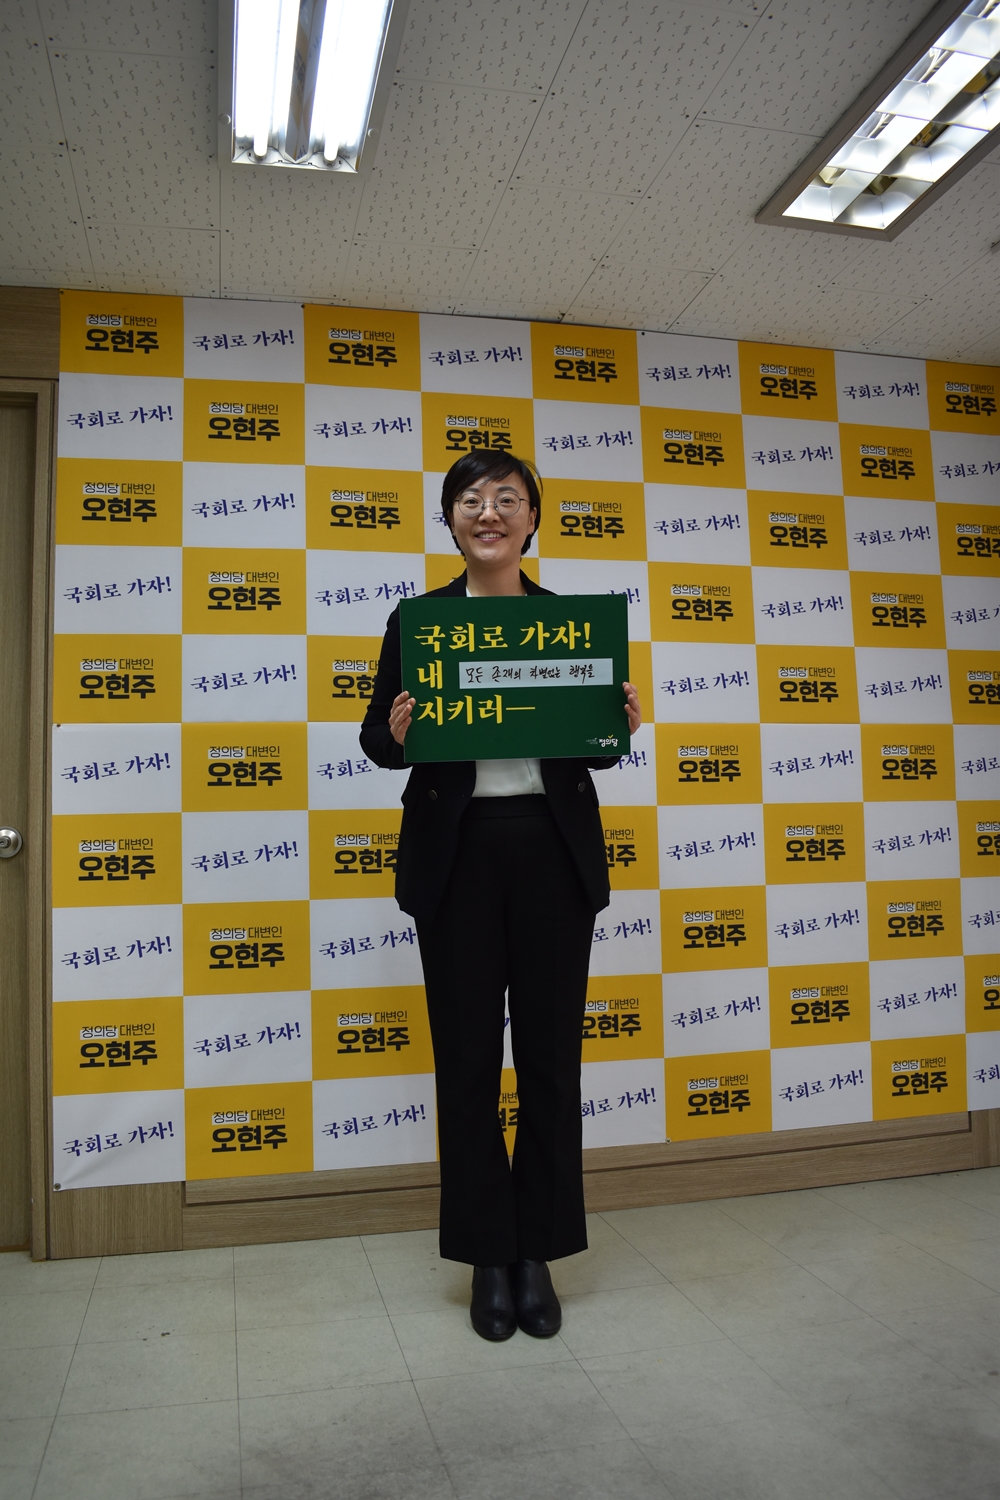 ▲오현주 정의당 후보자가 표어가 적힌 피켓을 들고 있다.